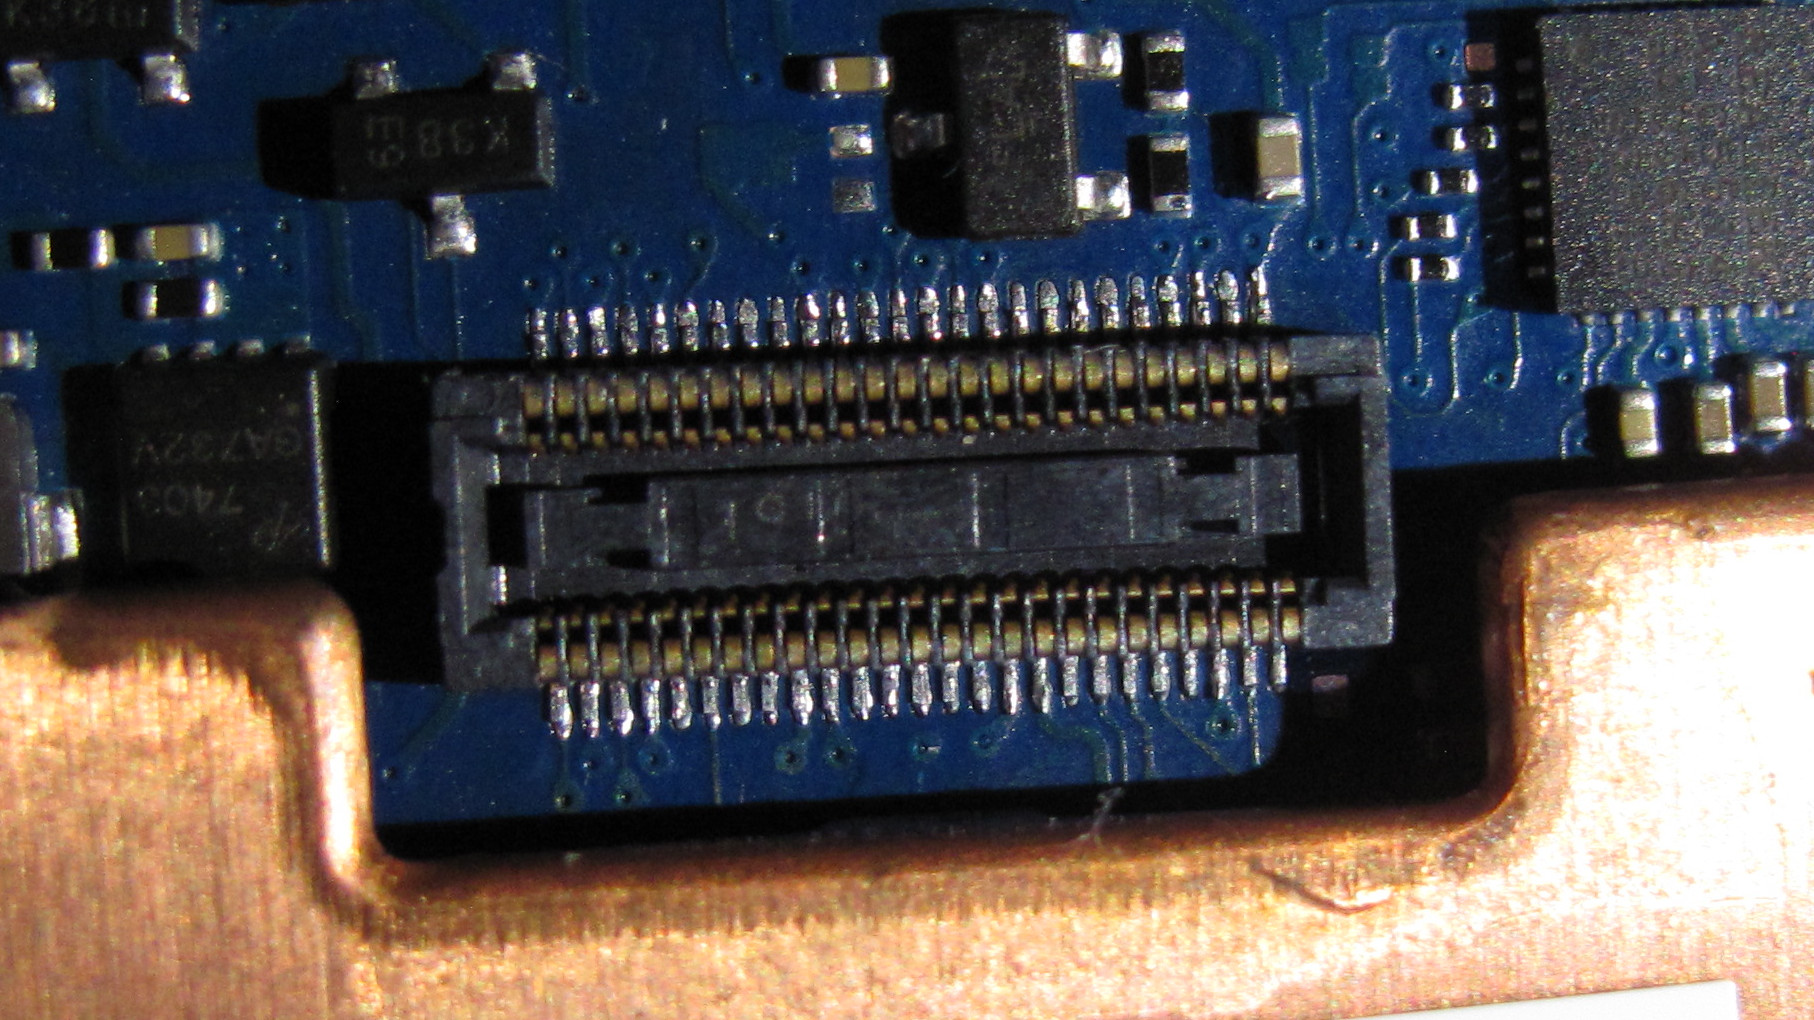 Servo header soldered on Kevin board